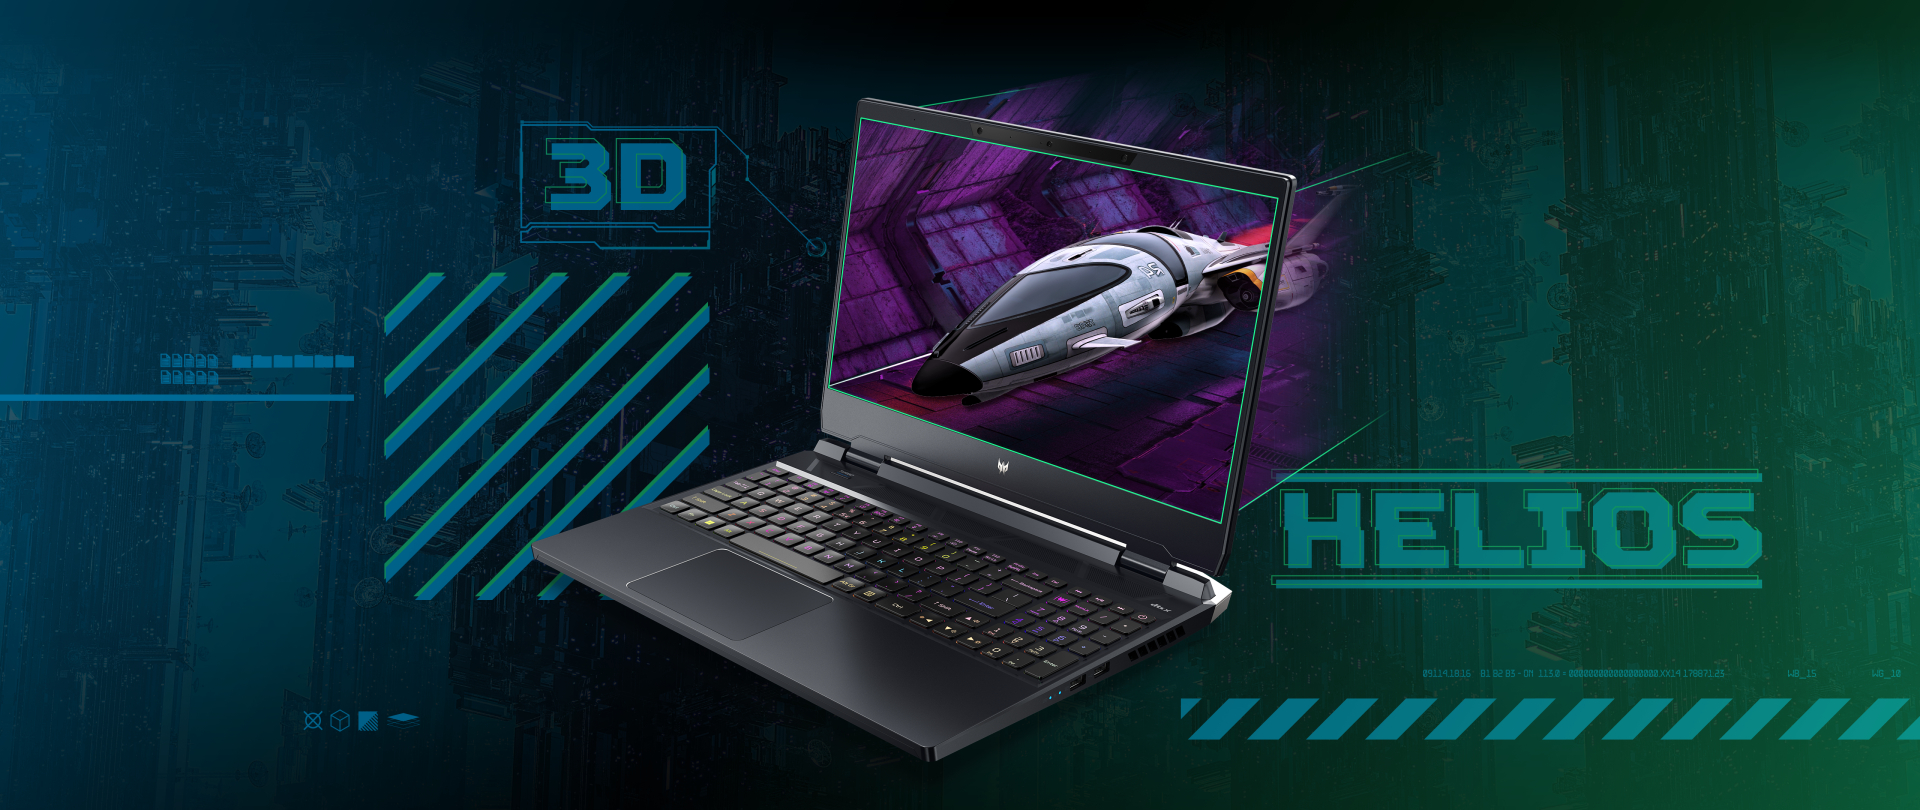 Predator Helios 300 SpatialLabs Edition mang đến trải nghiệm game 3D không cần đeo kính, hỗ trợ hơn 50 tựa game hiện đại và cổ điển ở thời điểm ra mắt.